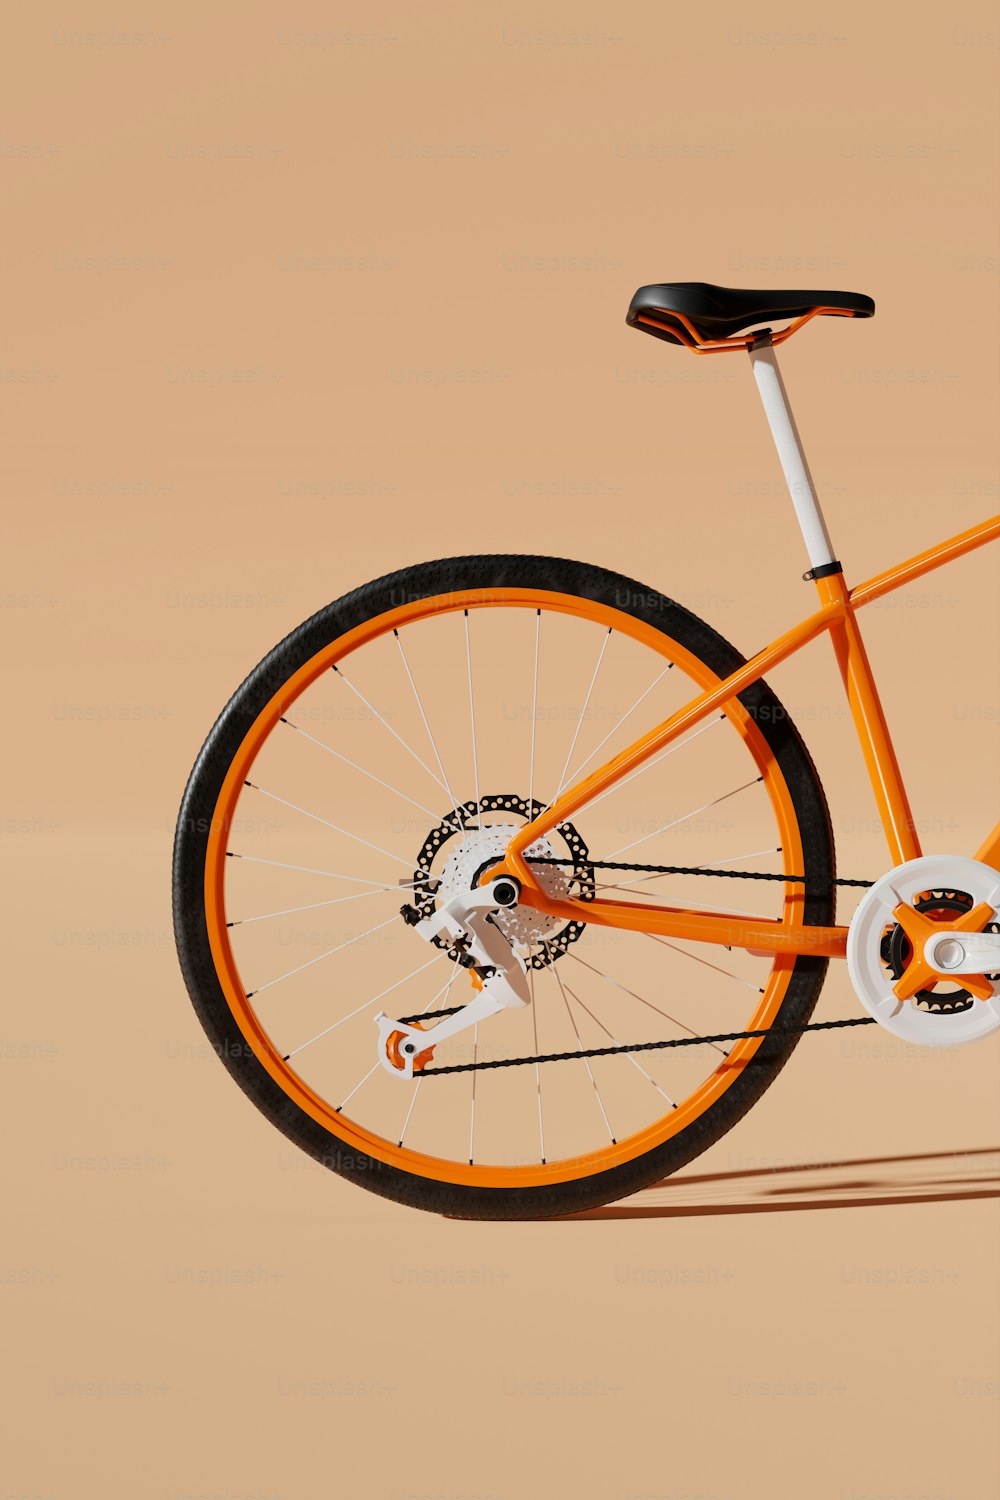 uma bicicleta laranja e branca é mostrada contra um fundo bronzeado